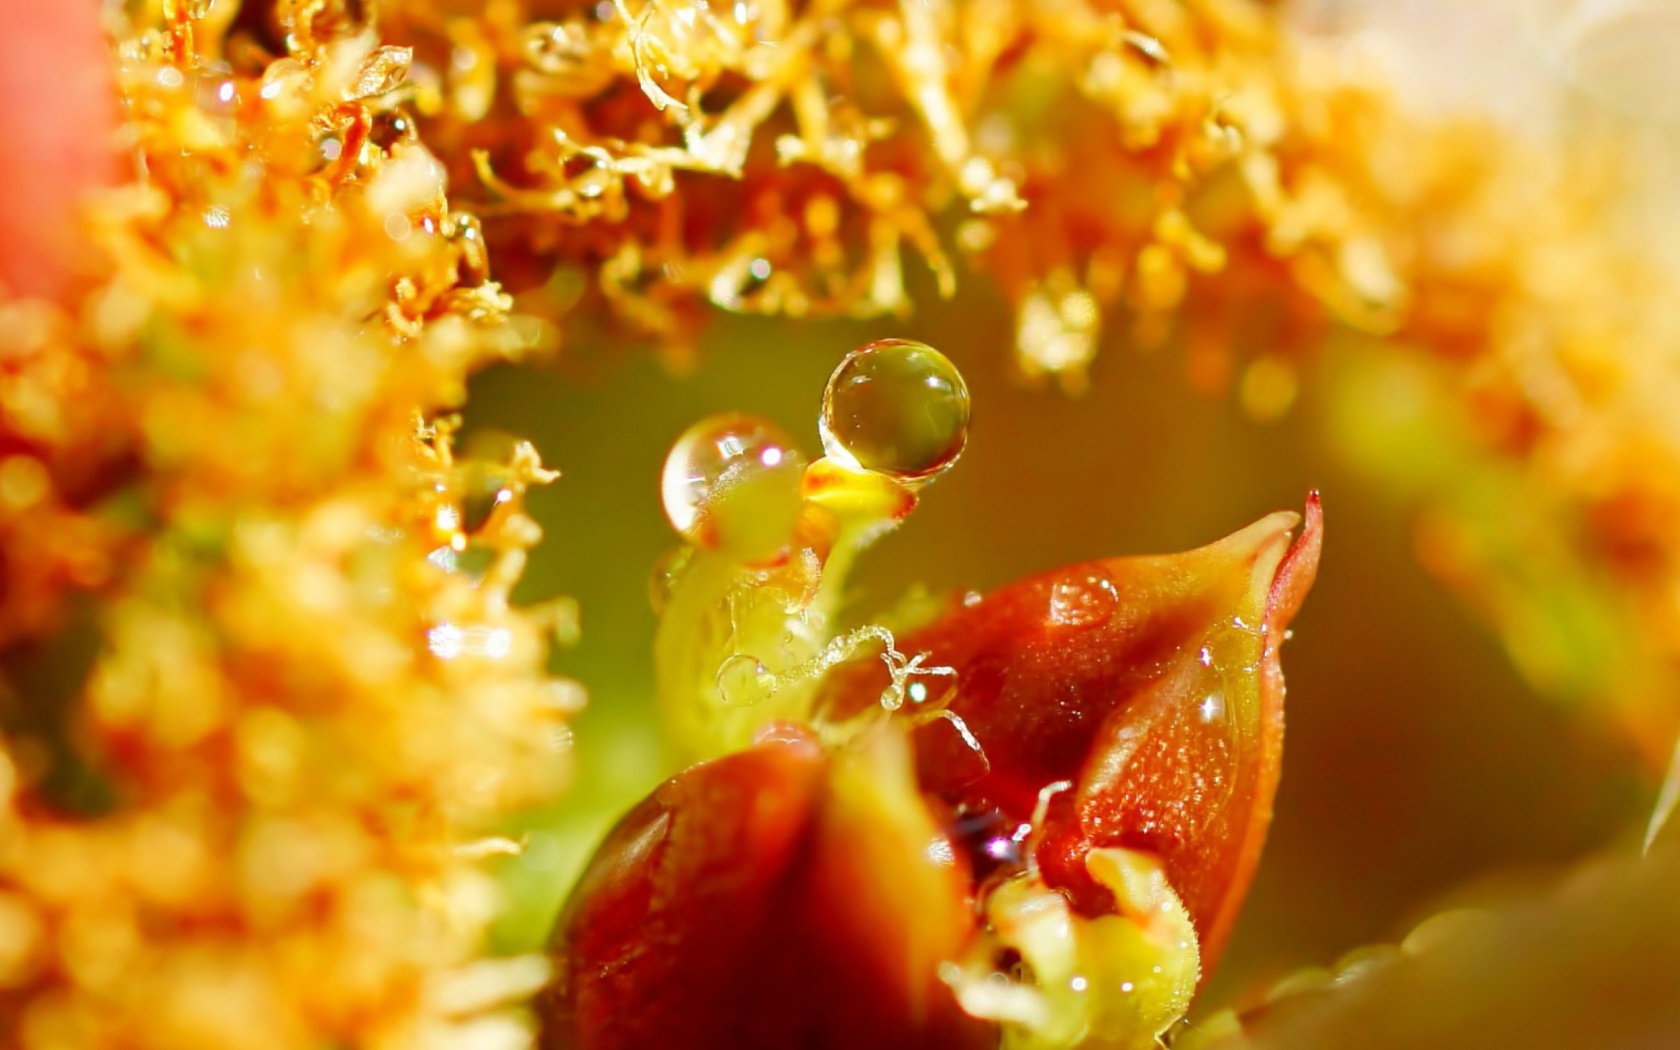 Sfondi Flower with Drops 1680x1050